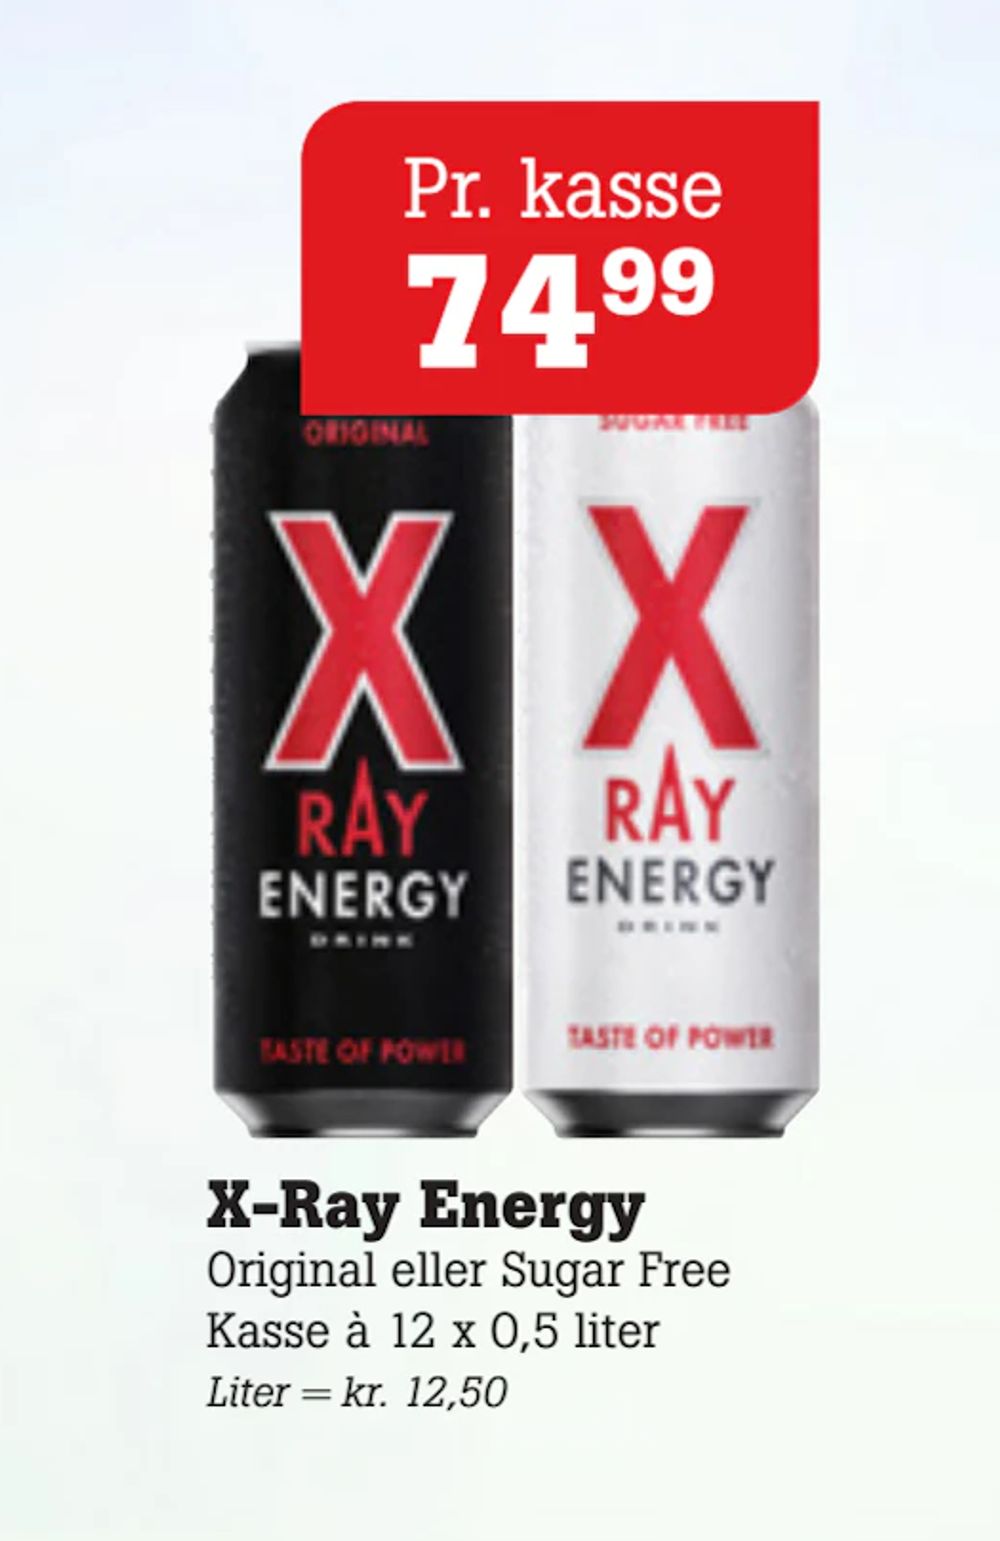 Tilbud på X-Ray Energy fra Poetzsch Padborg til 74,99 kr.